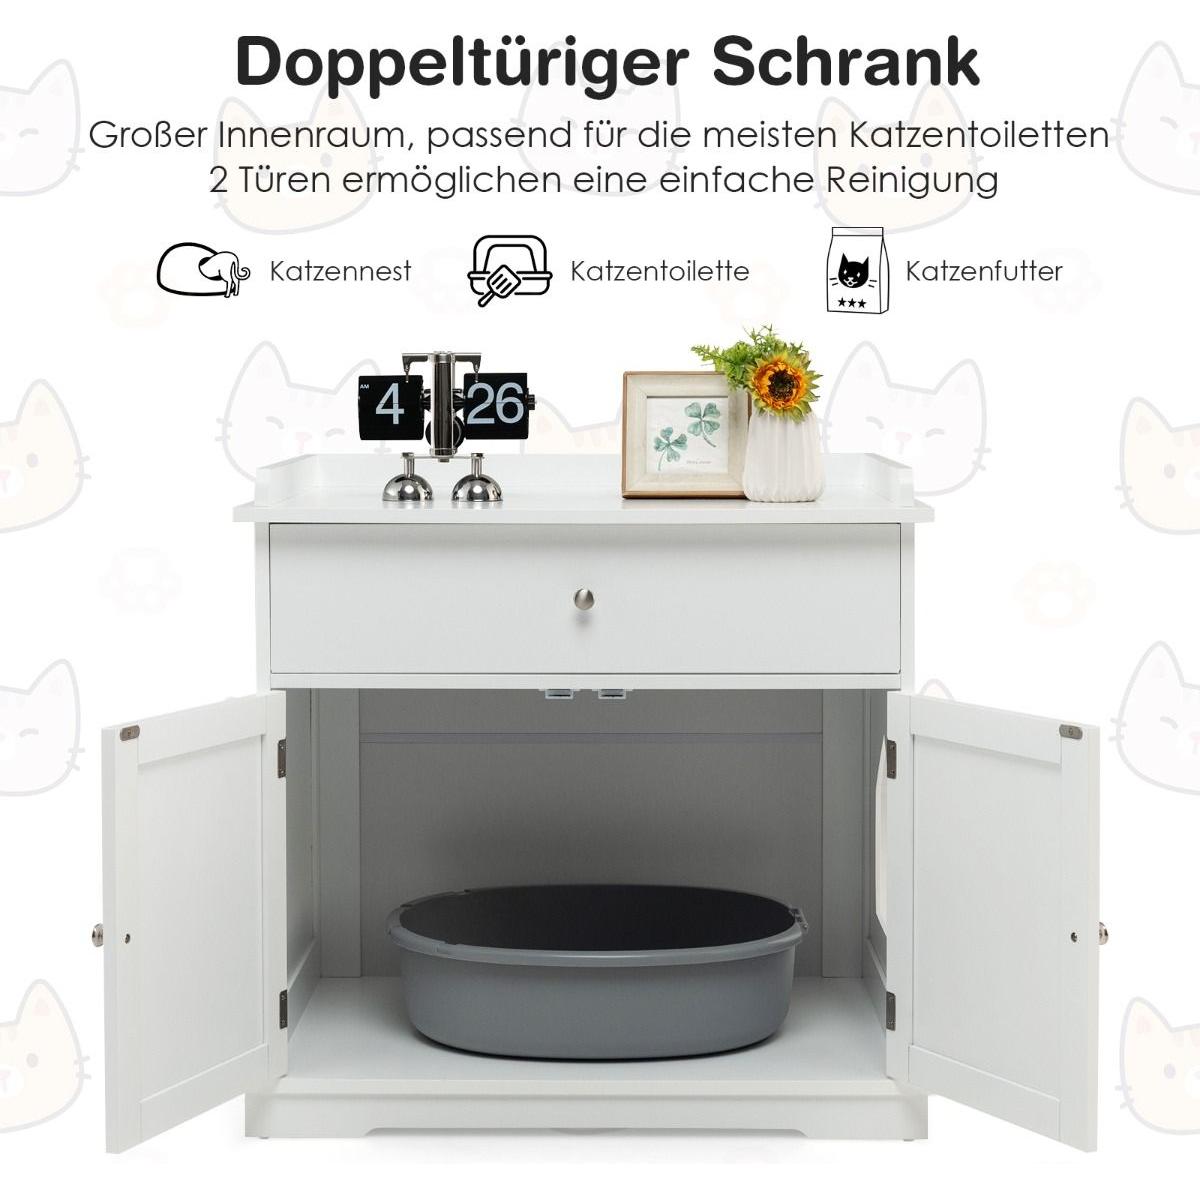 Moderner Dekorativer Katzentoiletten Schrank - Askmy4Cats